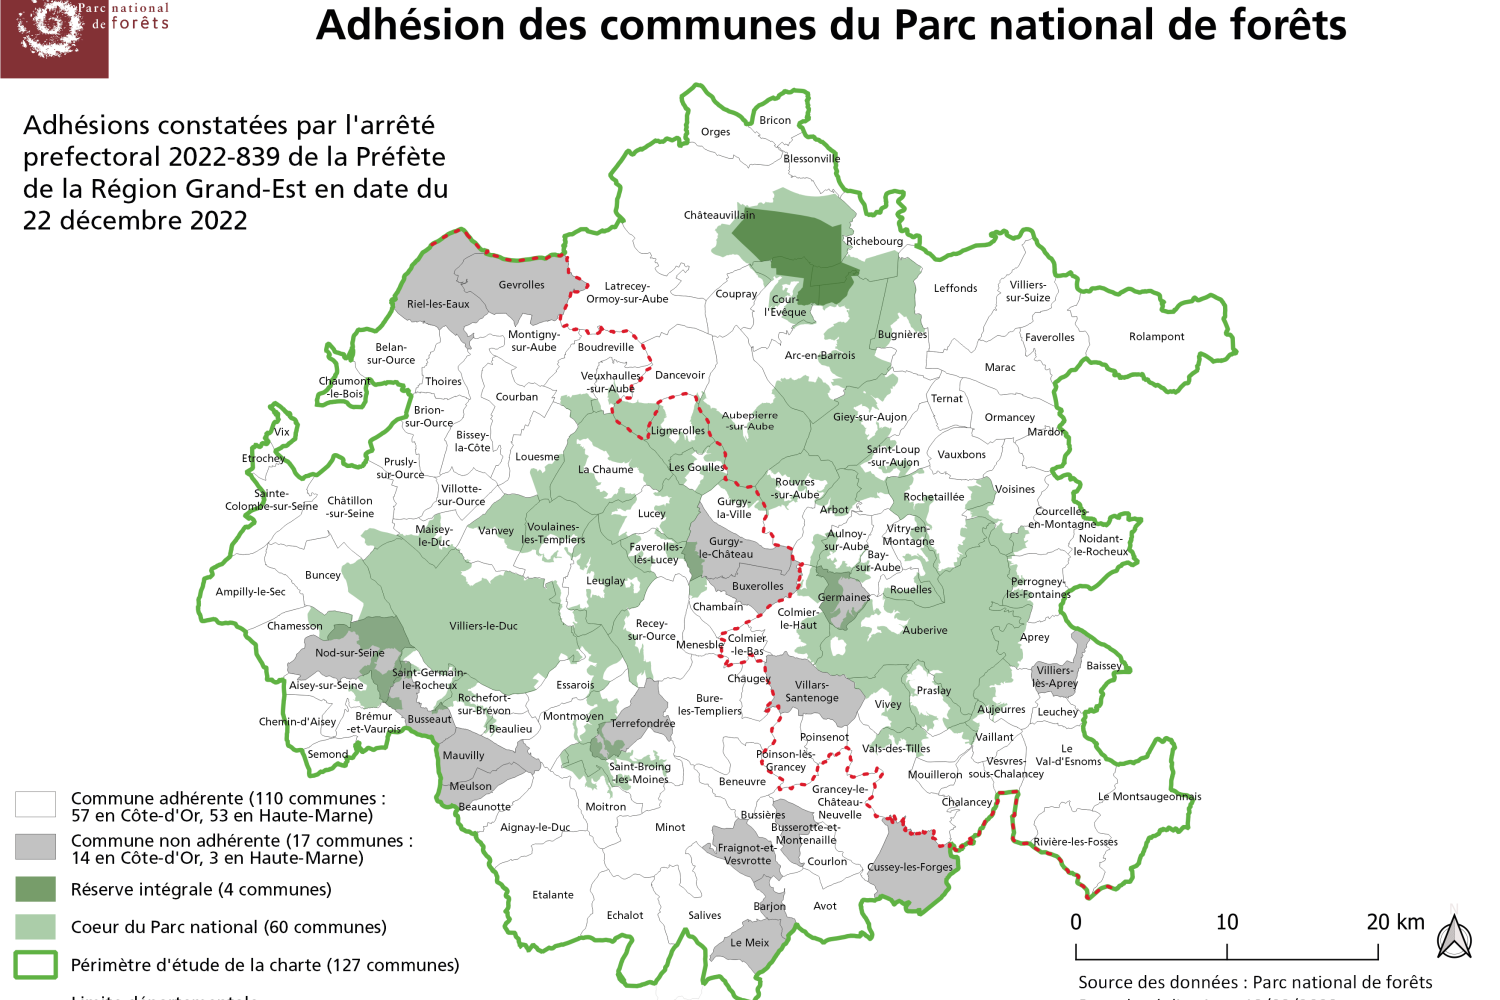 Carte des communes adhérentes à la charte du Parc national de forêts